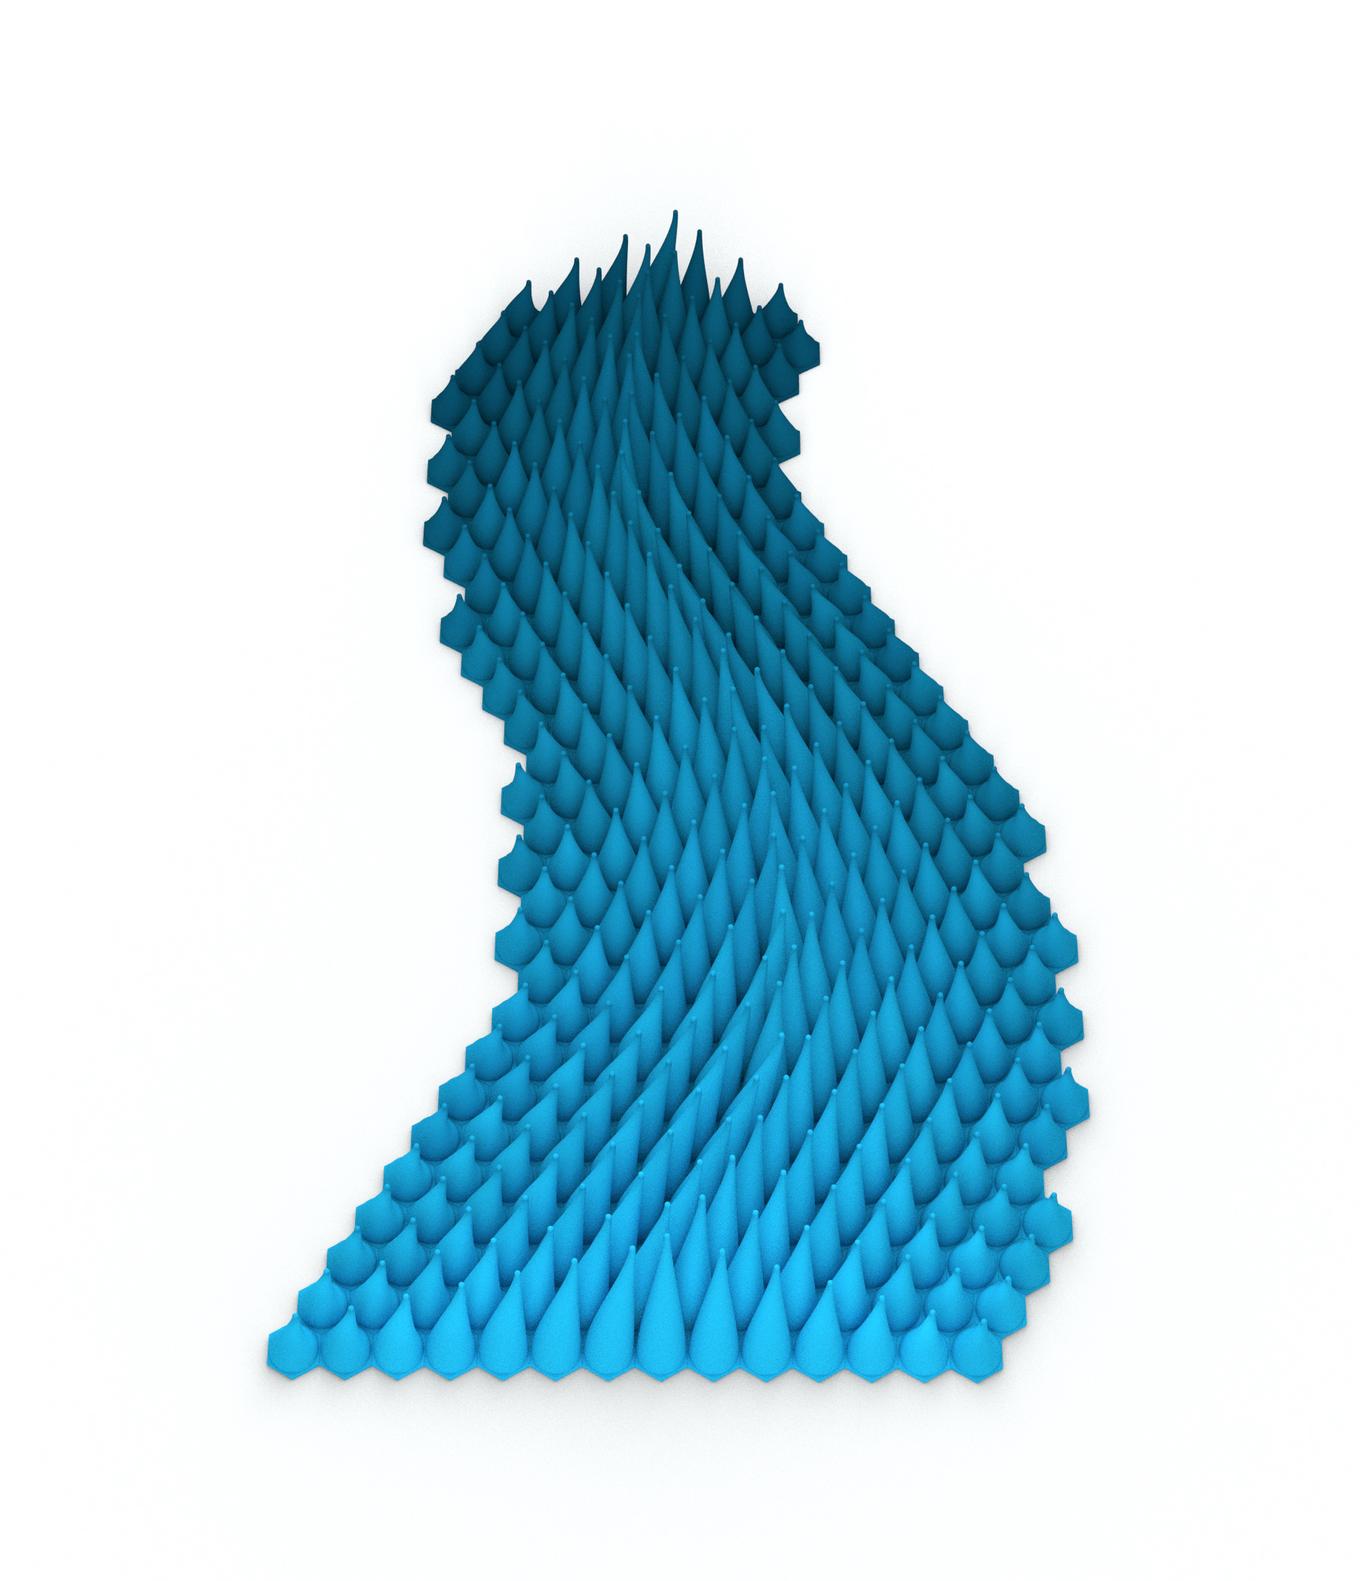 Flowing Wave | Herschel Shapiro | Abstract Relief Sculpture